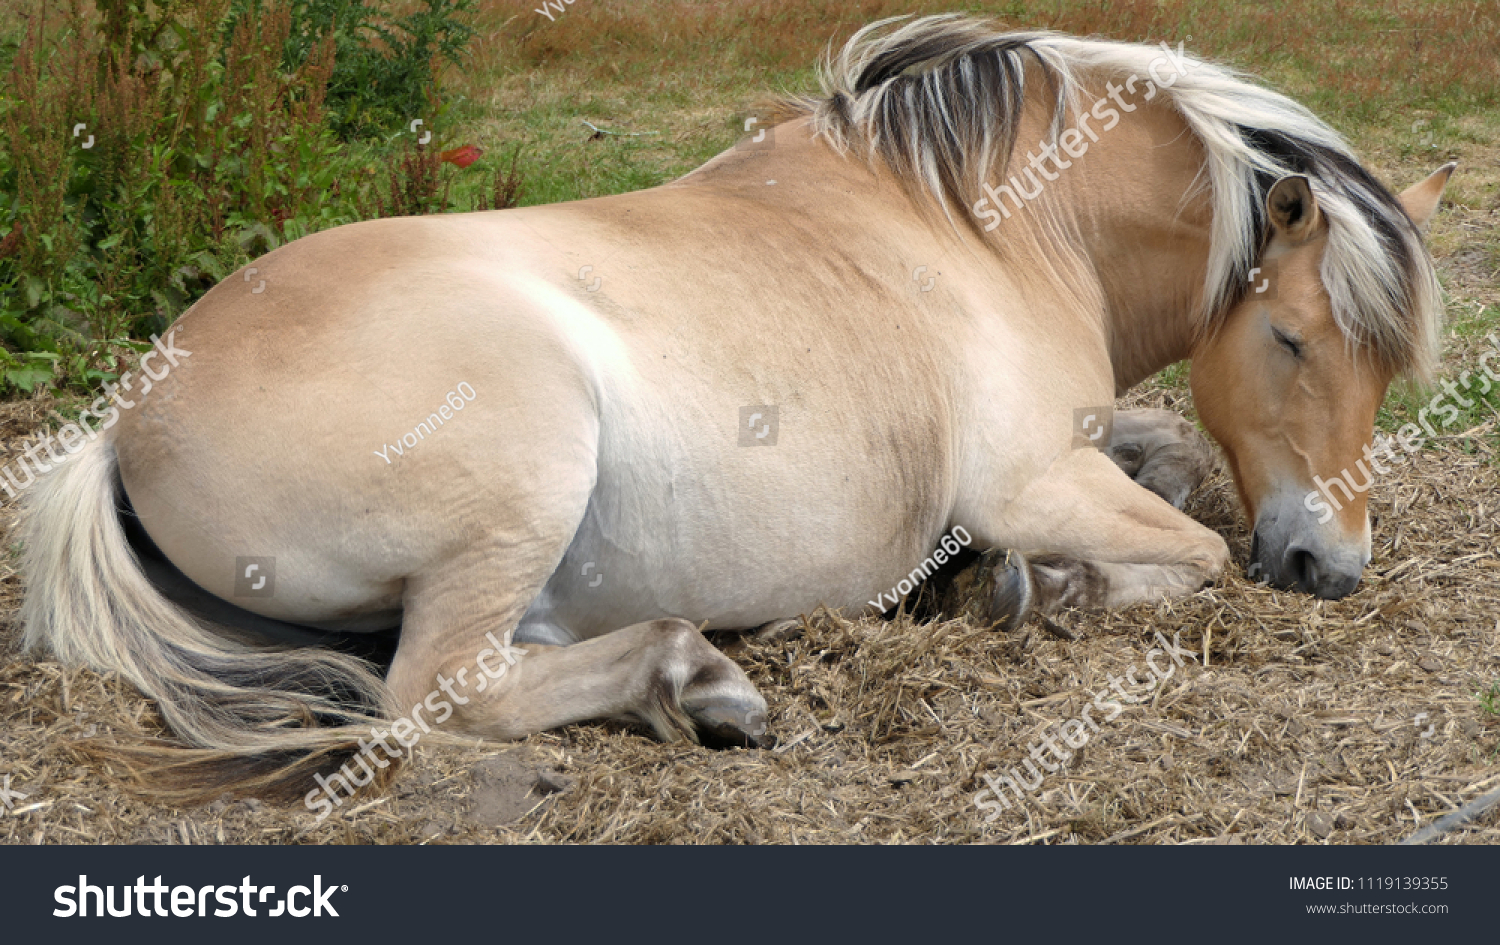 Лошадь спит на земле